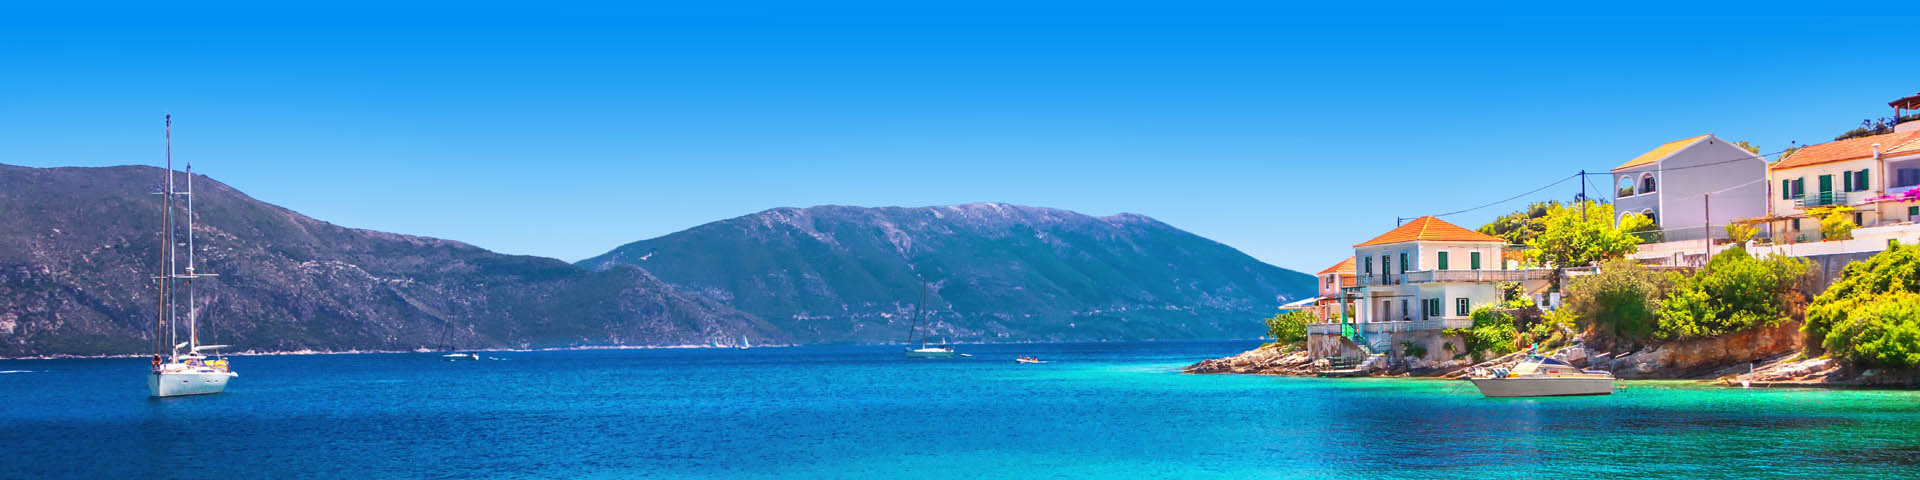 Helderblauwe zee van Griekenland